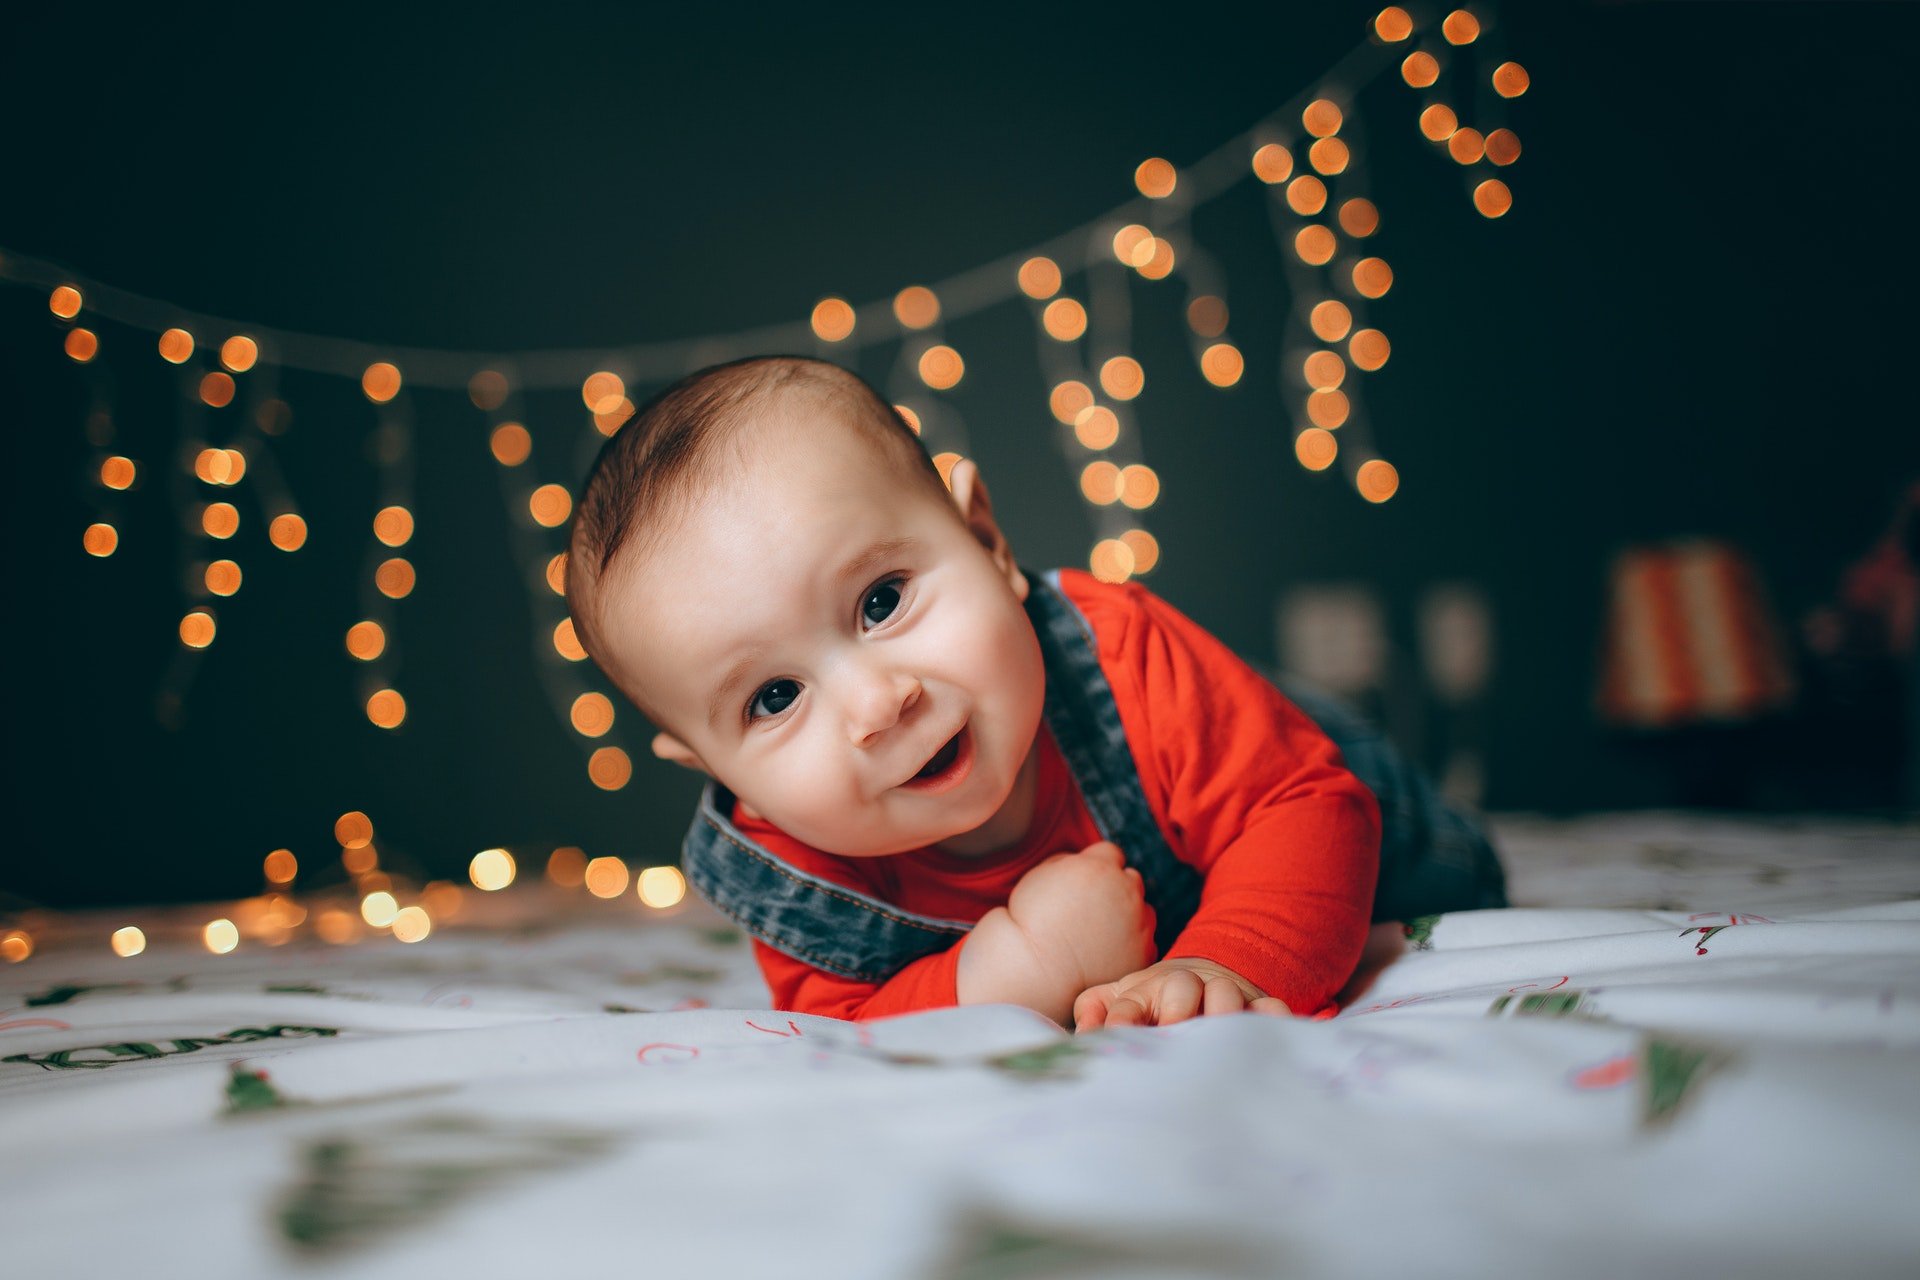 Pourquoi opter pour des papiers peints pour la décoration de la chambre de votre bébé ?